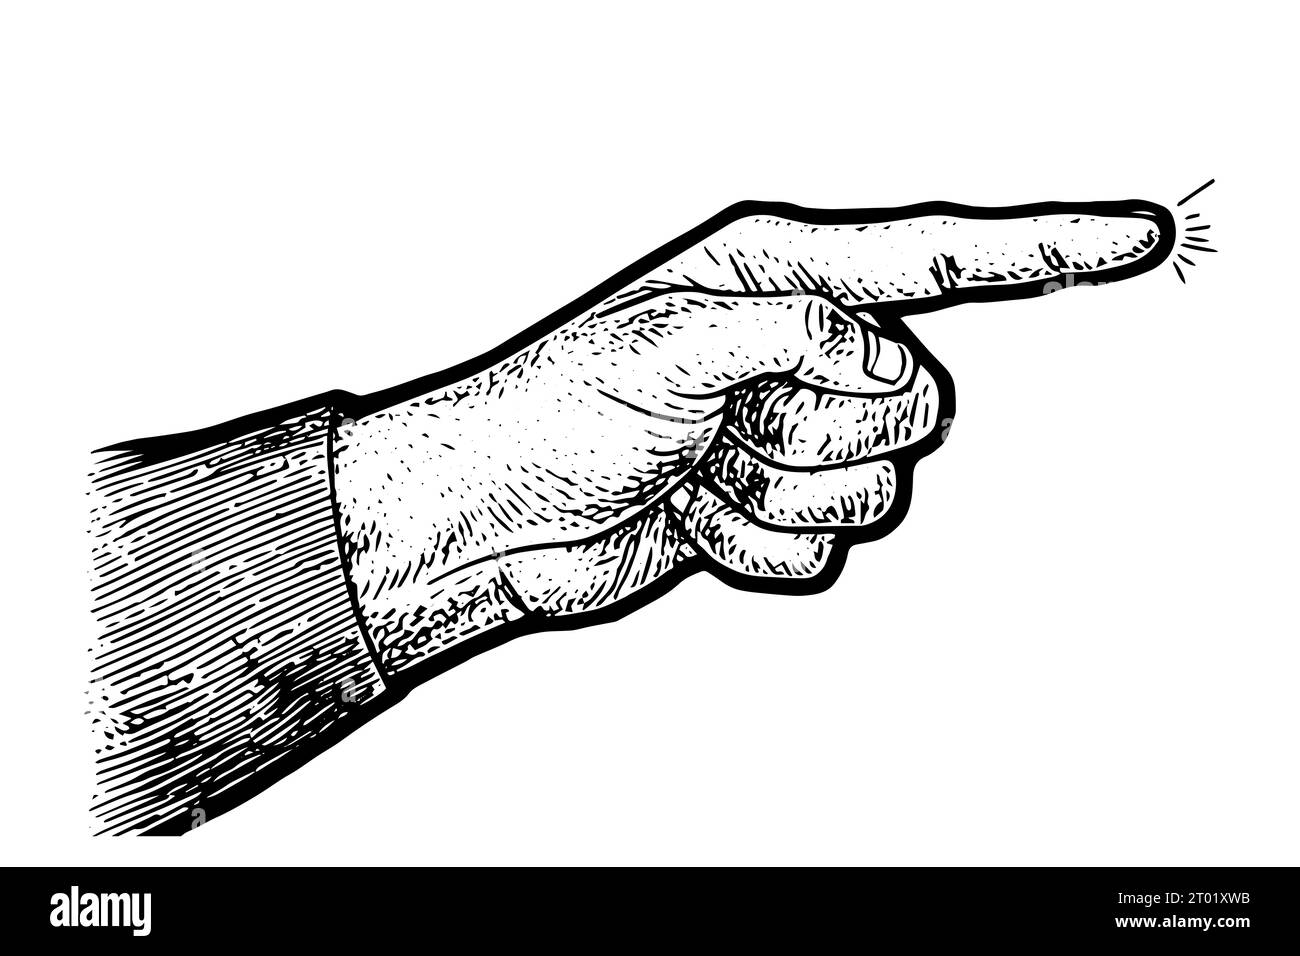 Pointing finger. Vector black vintage engraved illustration. Hand drawn ink sketch. Stock Vector